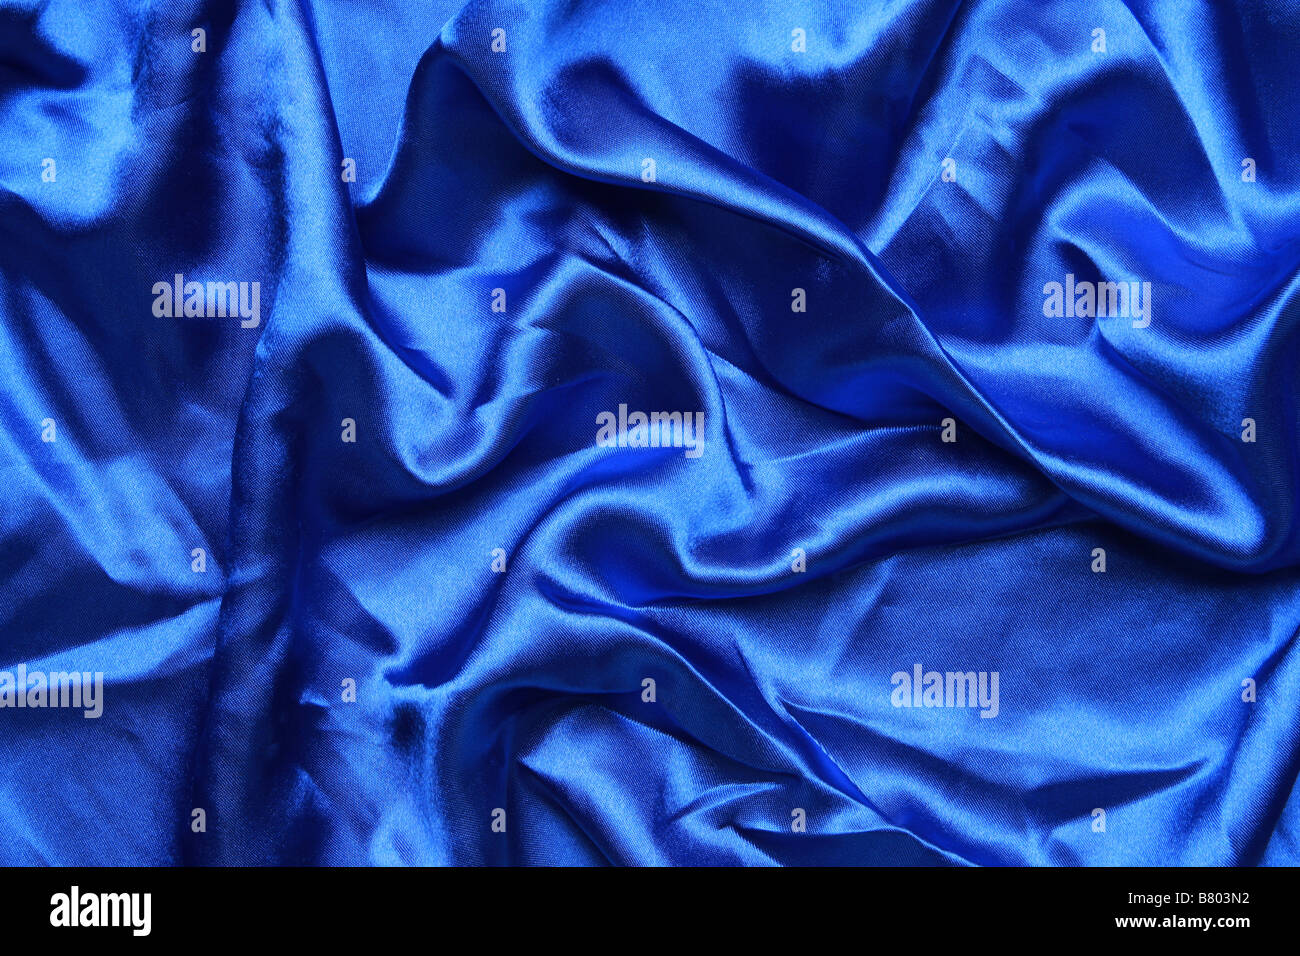 En satin de couleur bleu en plongée des plis et replis de la création de toutes sortes de formes et ombres Banque D'Images